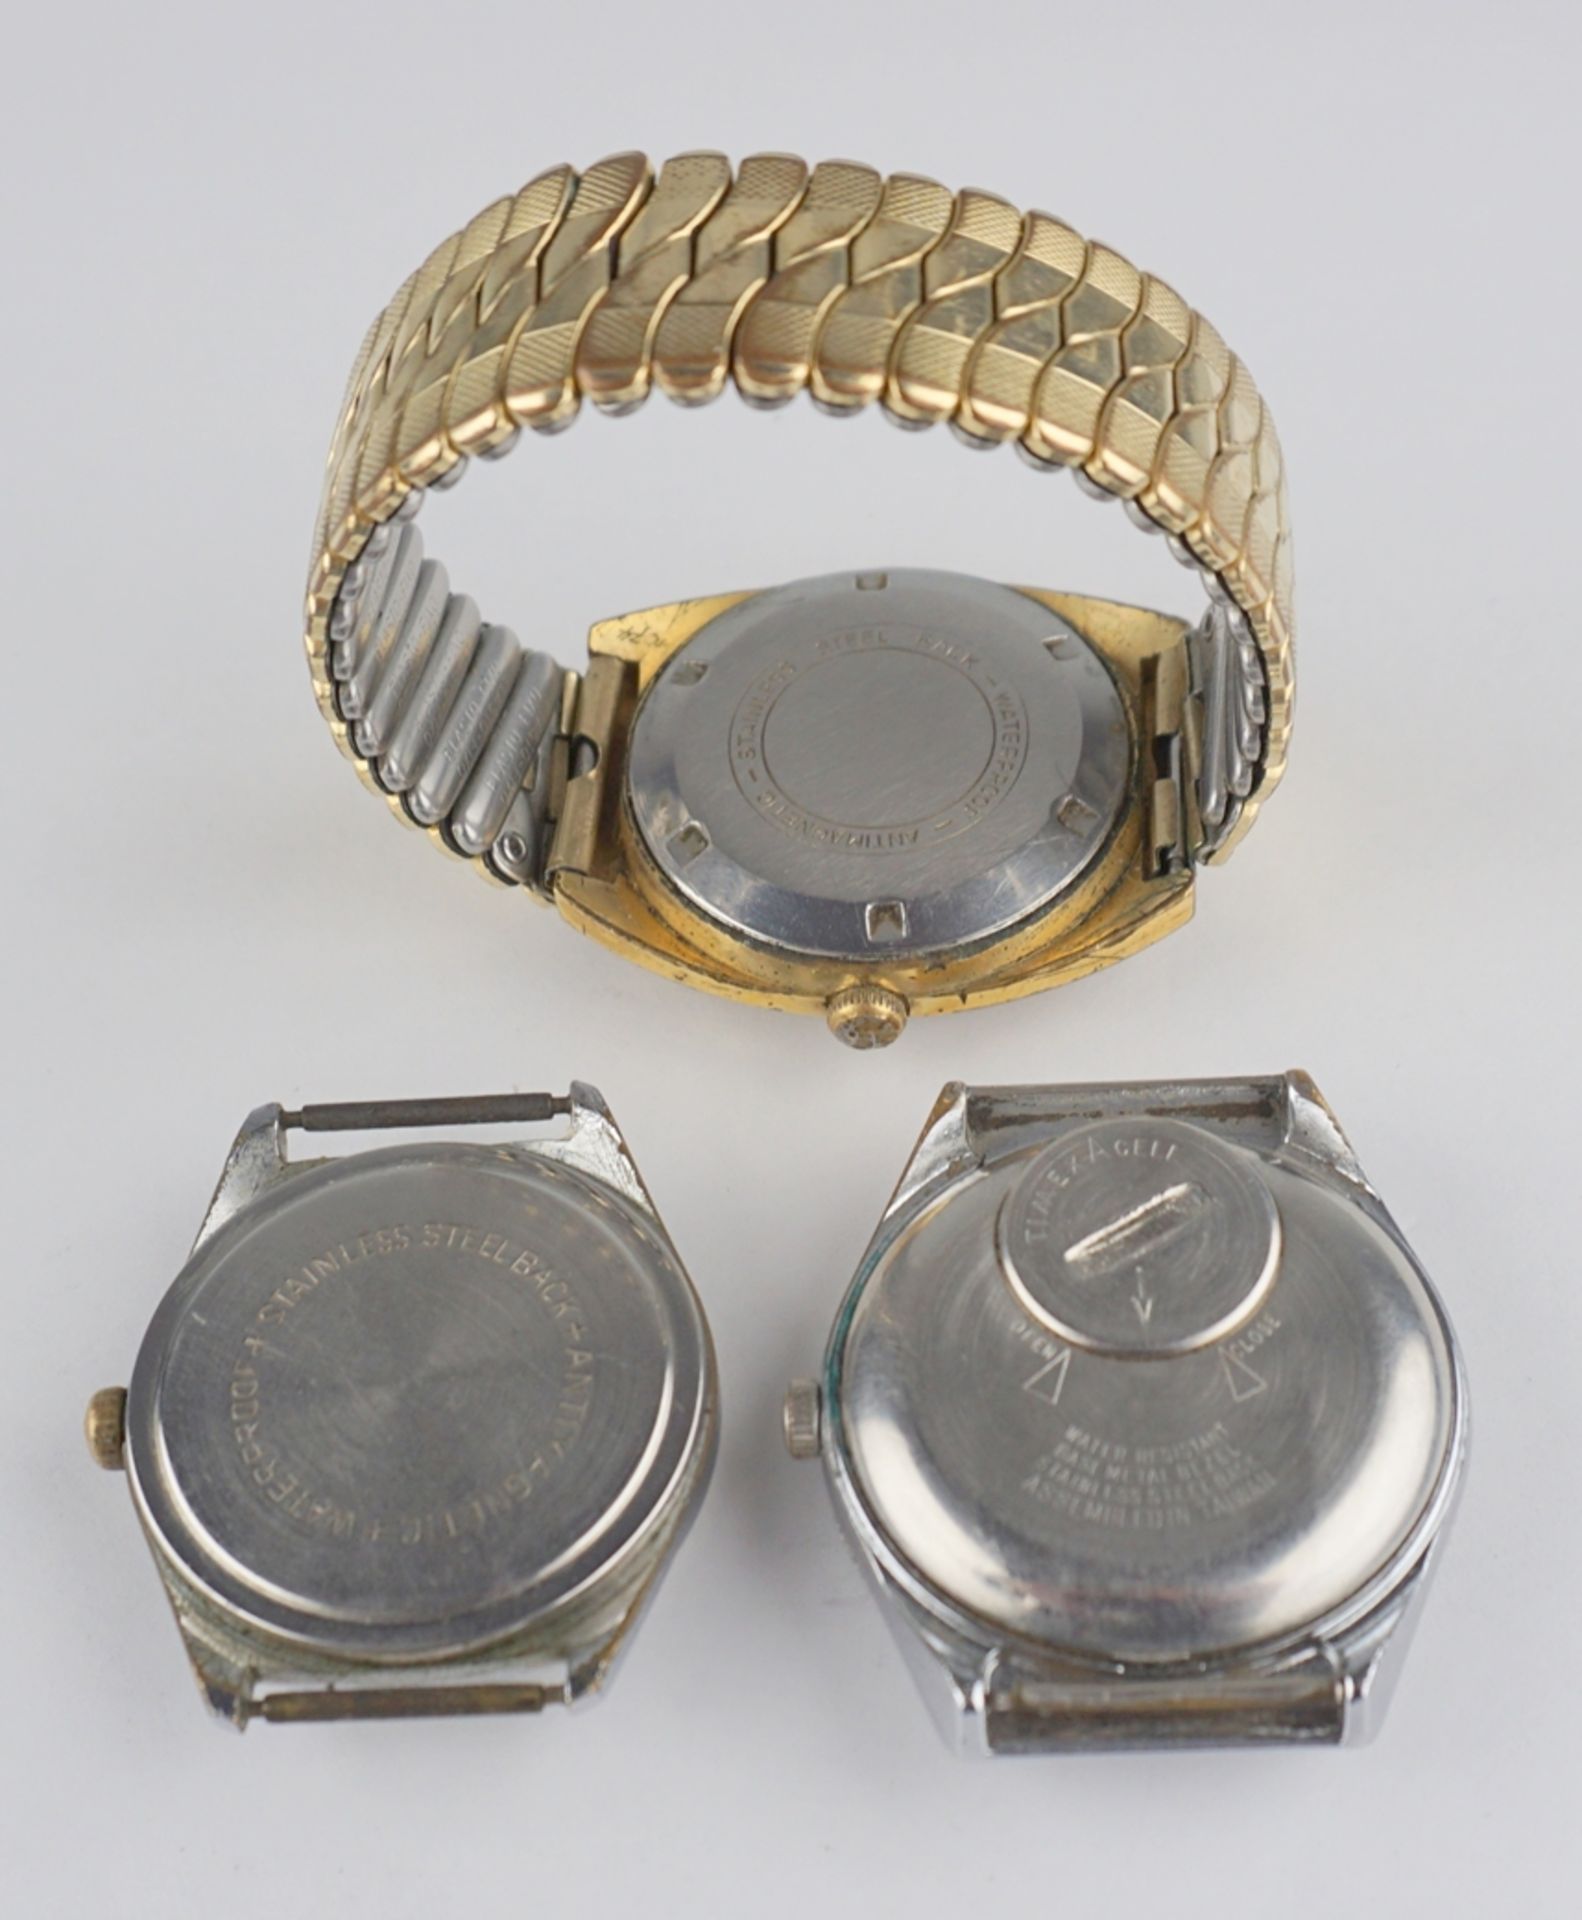 3 Armbanduhren Haller, Timex Q und Arctos, 1950er bis 1970er Jahre - Image 3 of 3